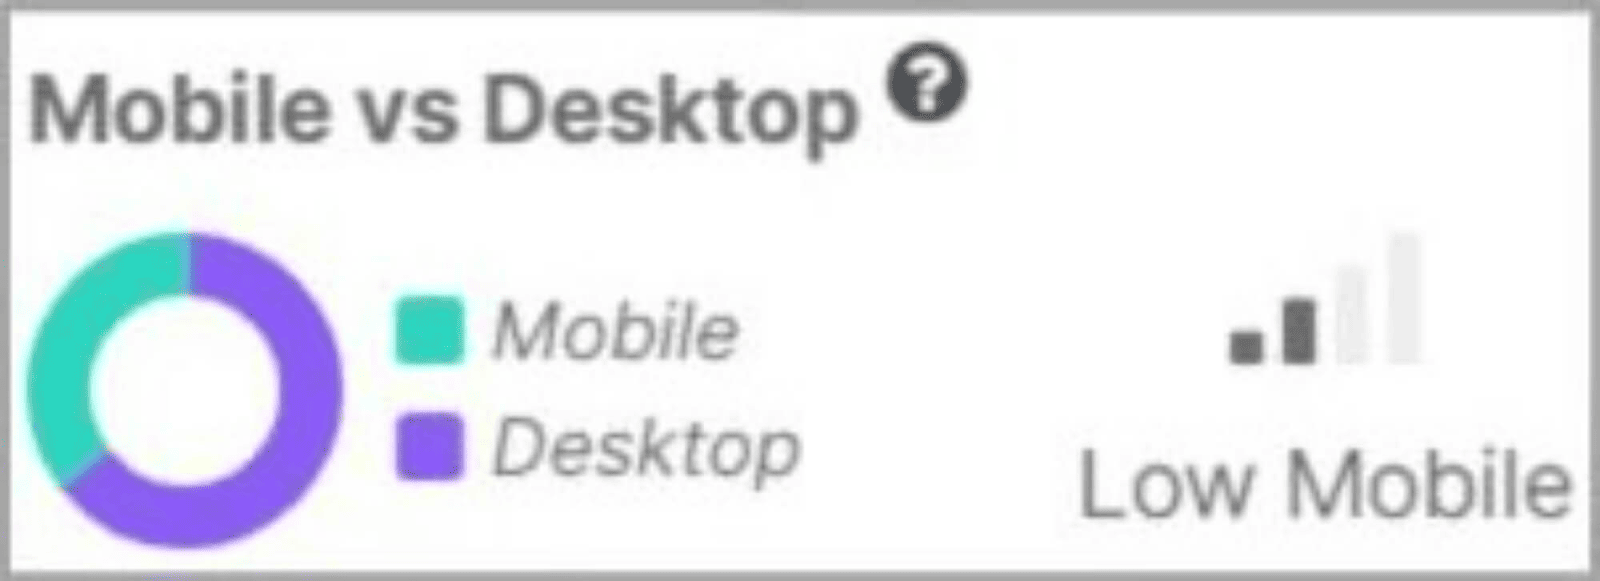 Mobile vs. Desktop share